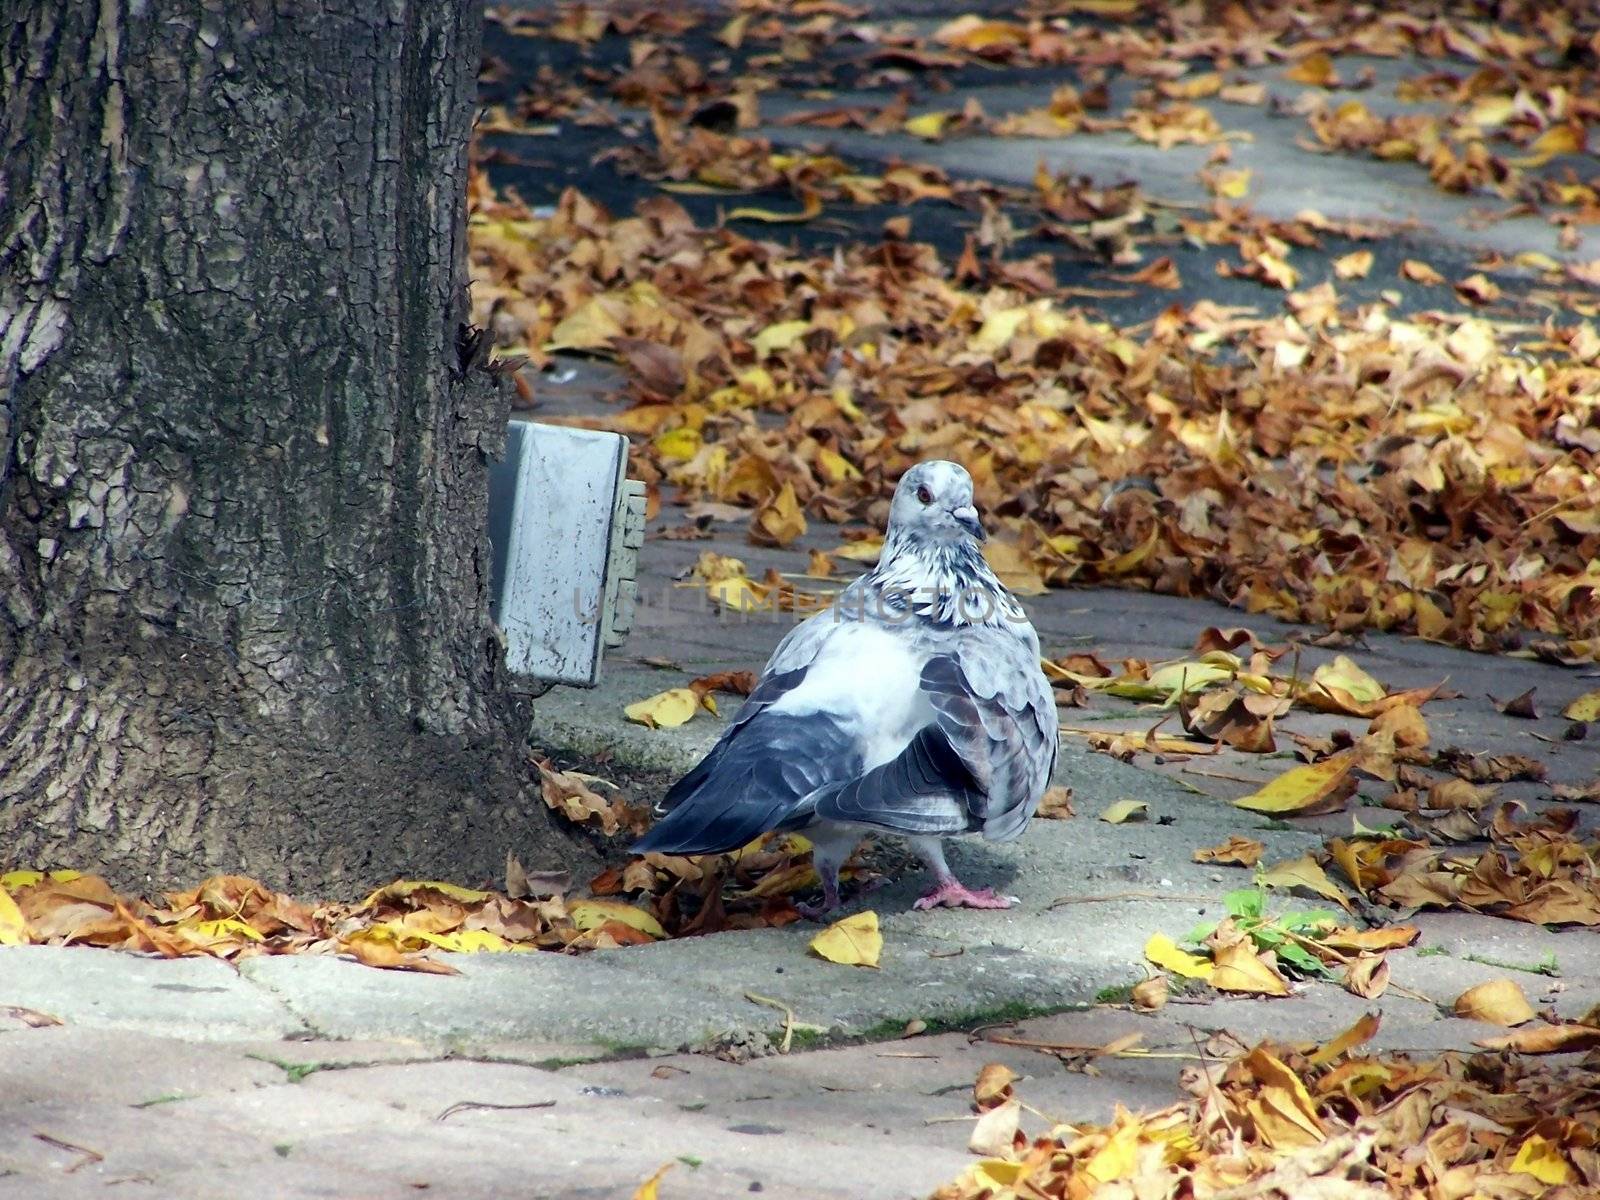 pigeon strutting around the park